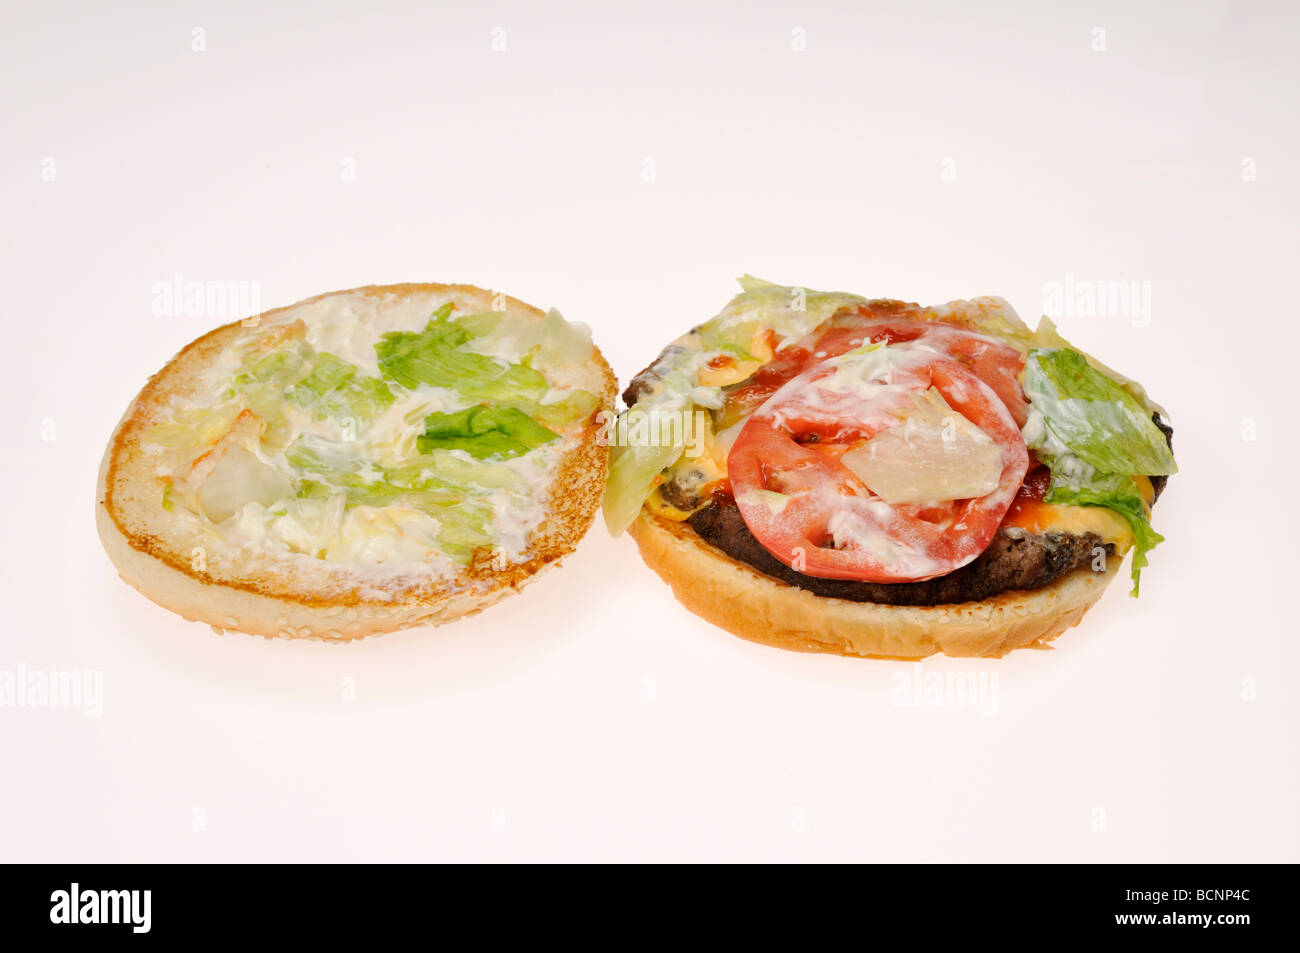 Burger King Whopper Sandwich mit Top bun öffnen, um die Zutaten anzeigen Stockfoto